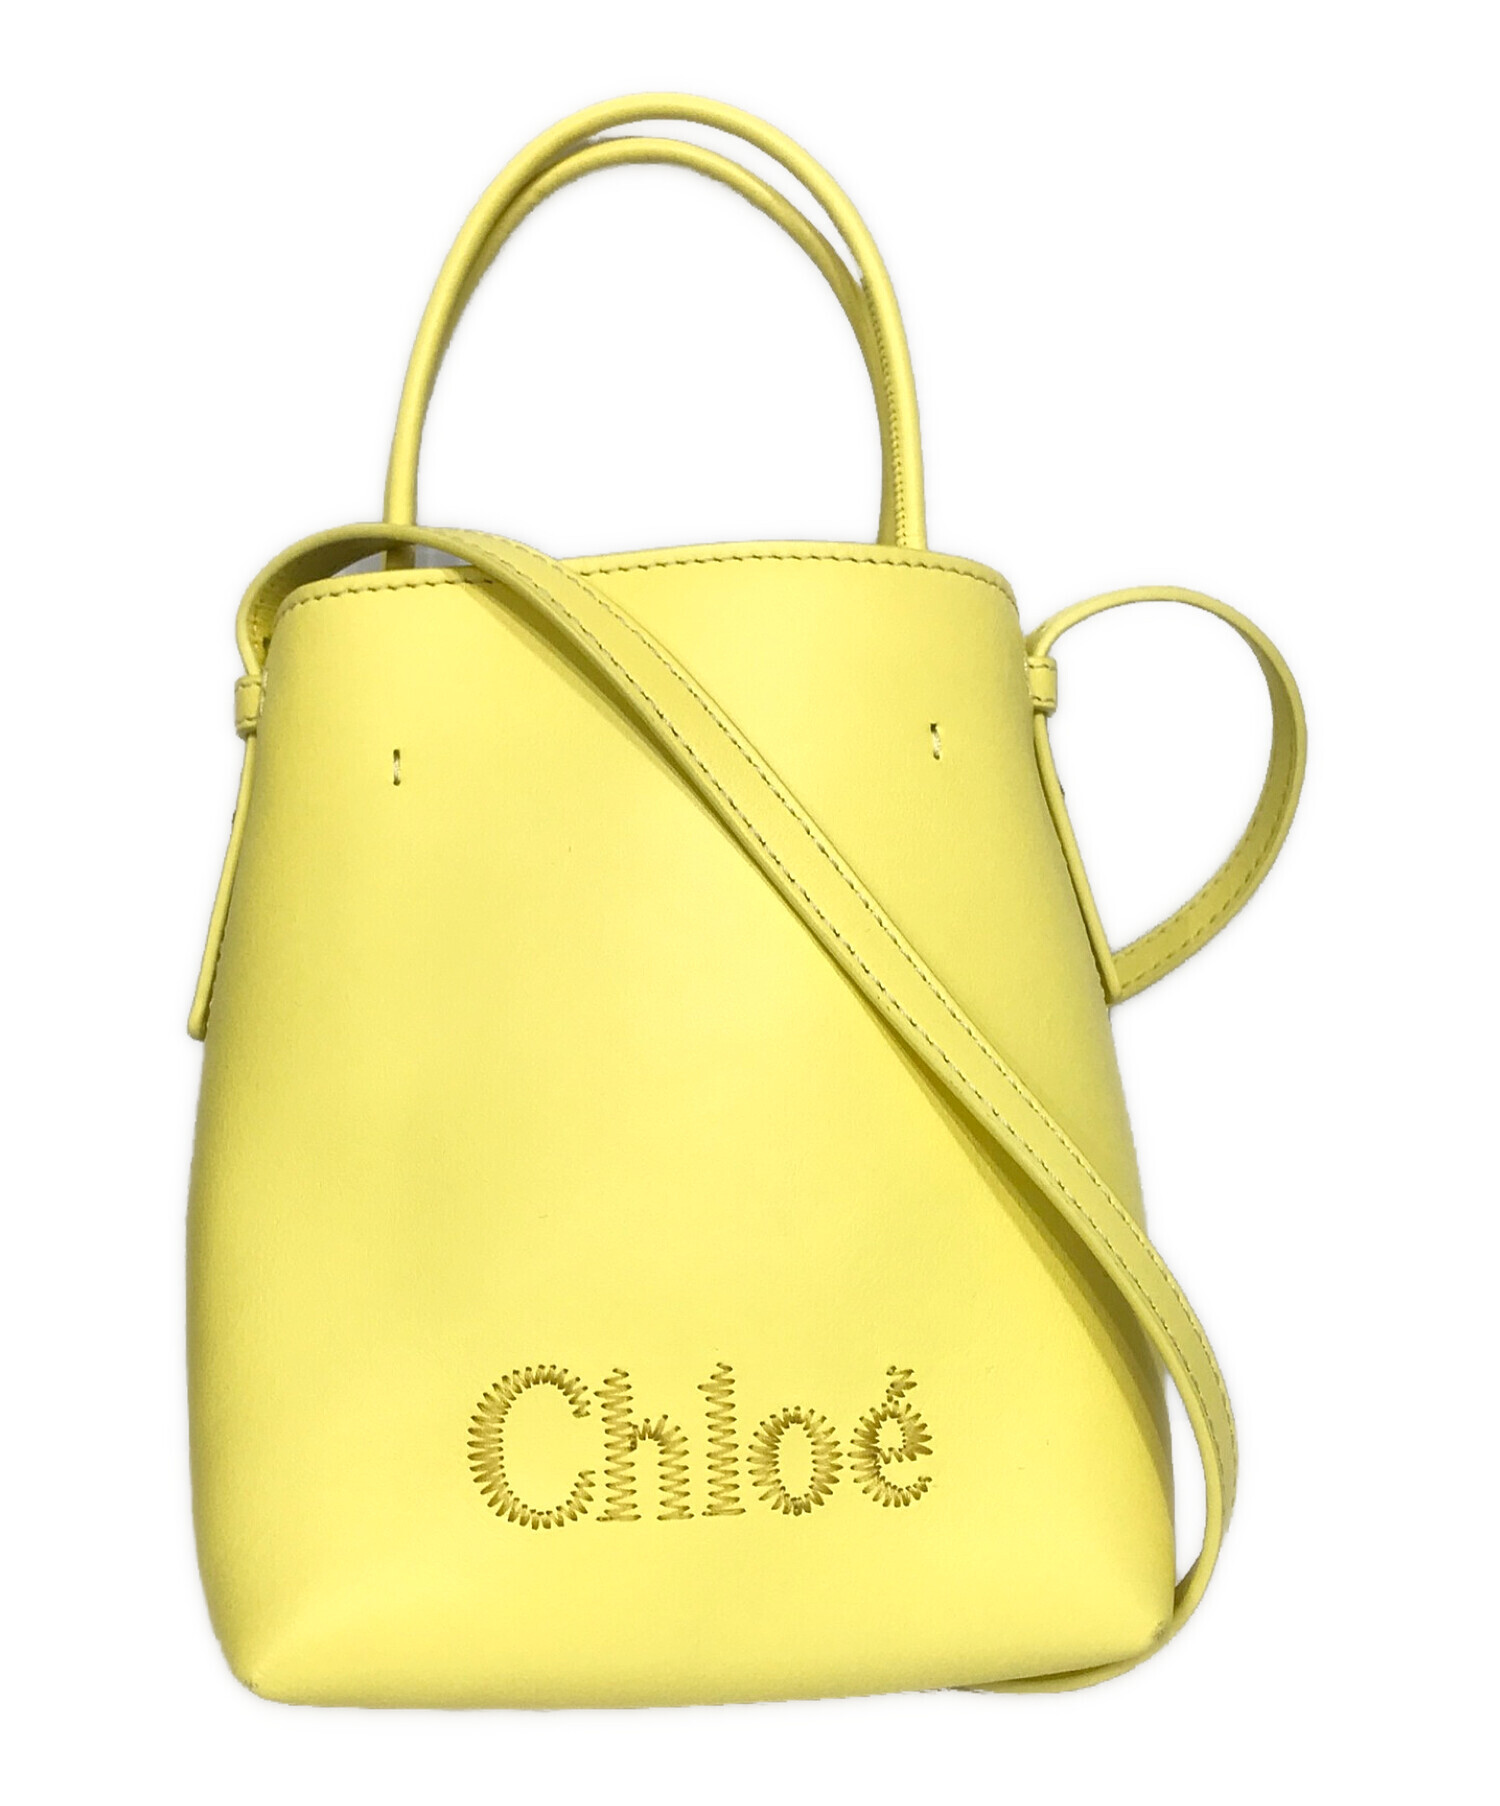 Chloe (クロエ) “chloe sense”マイクロトートバッグ イエロー